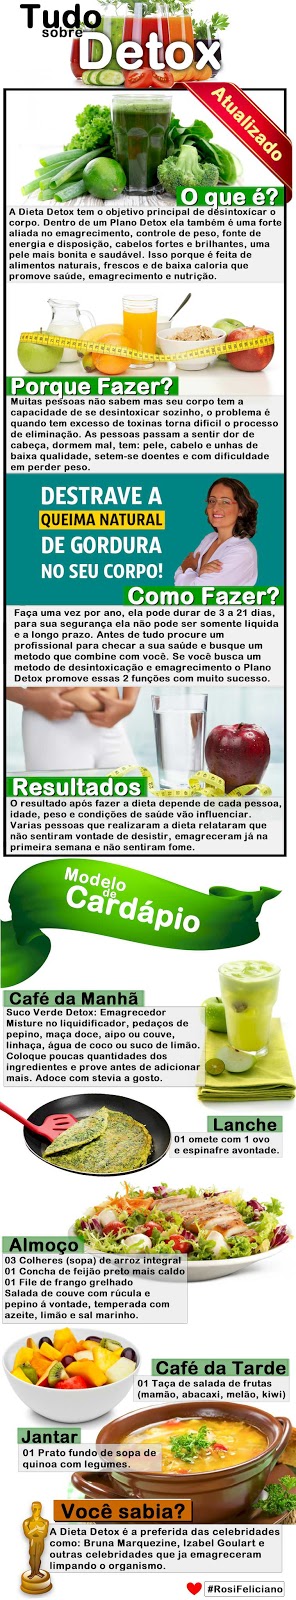 http://dieta.blog.br/16-beneficios-agua-com-limao-para-que-serve-e-como-fazer